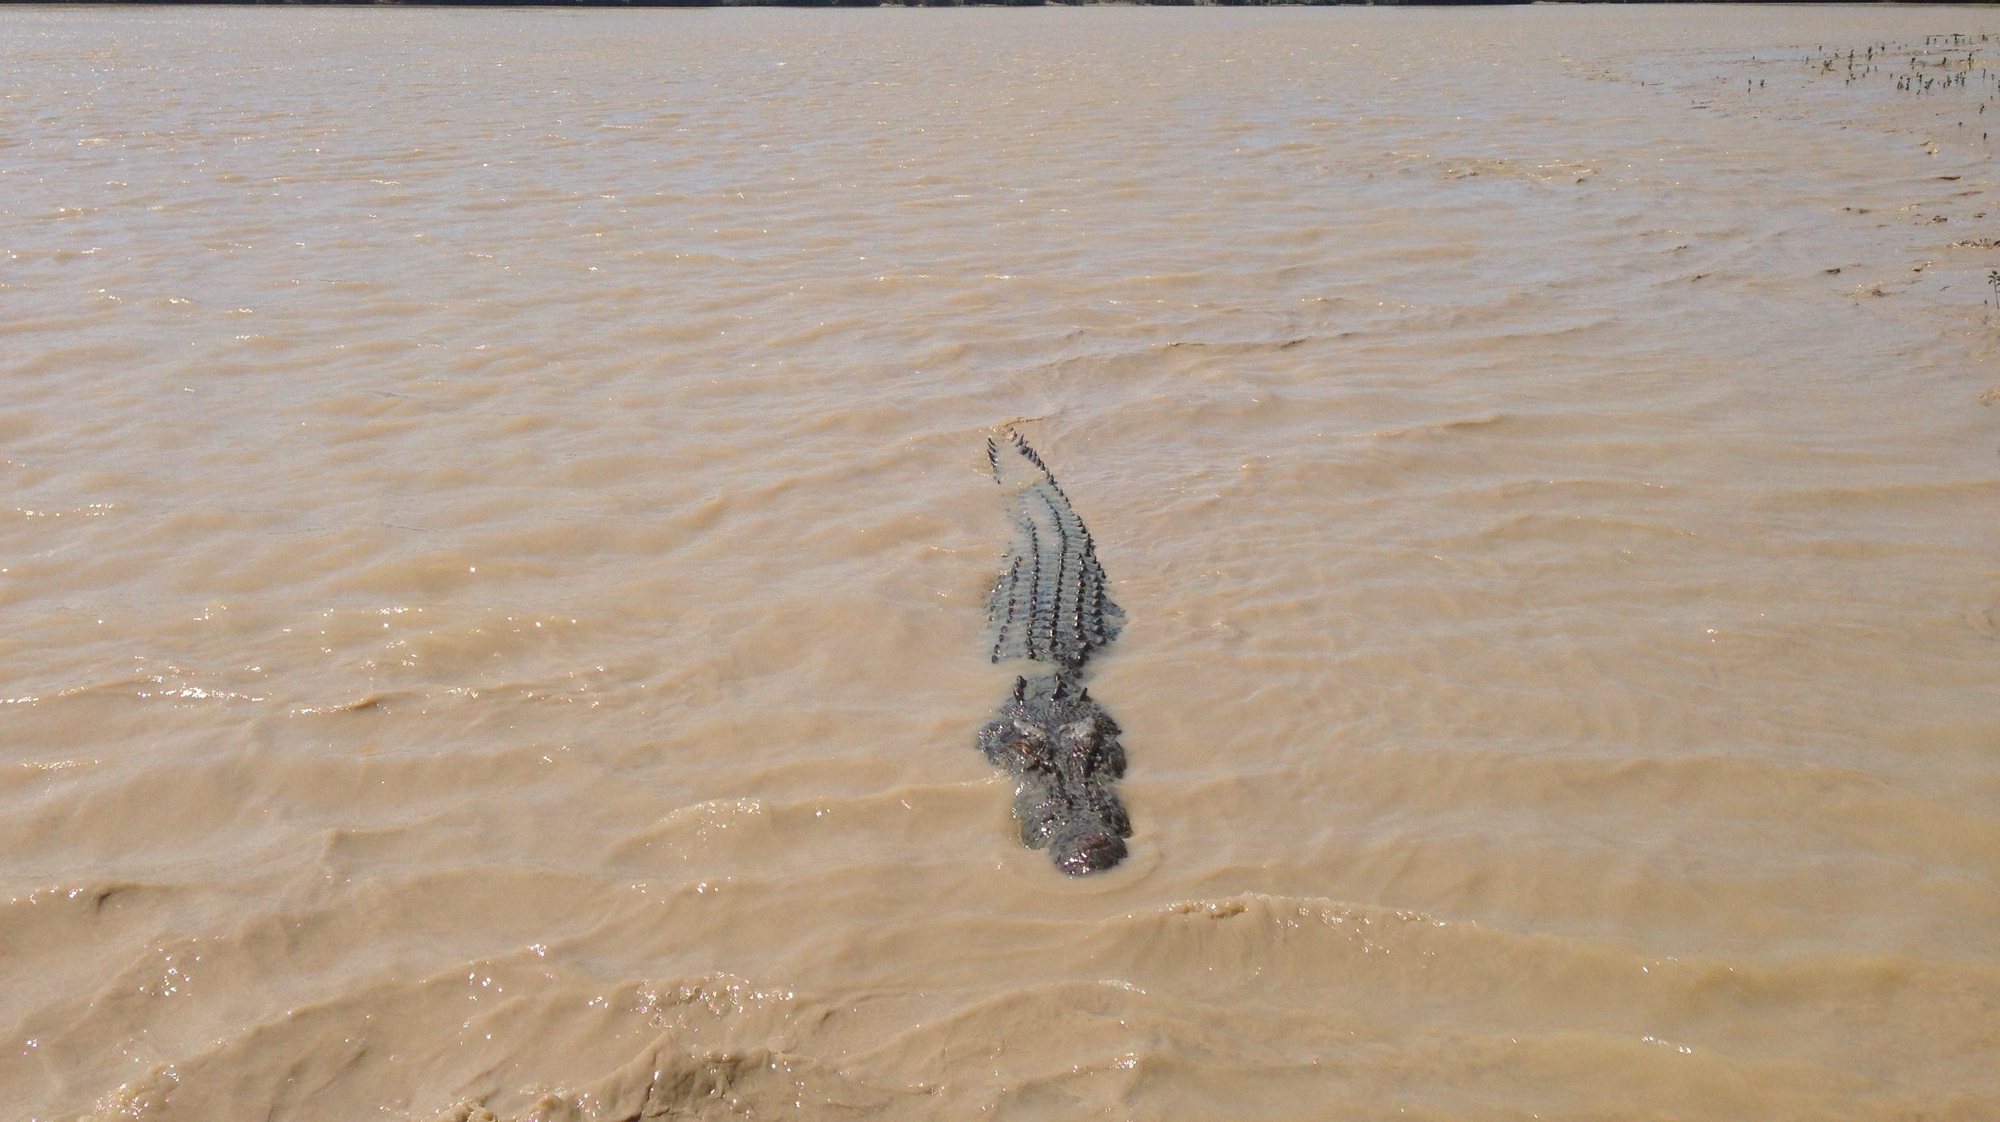 Crocodilo de água salgada no rio Adelaide perto de Darwin, na Austrália. Neda Vanovac/Lusa